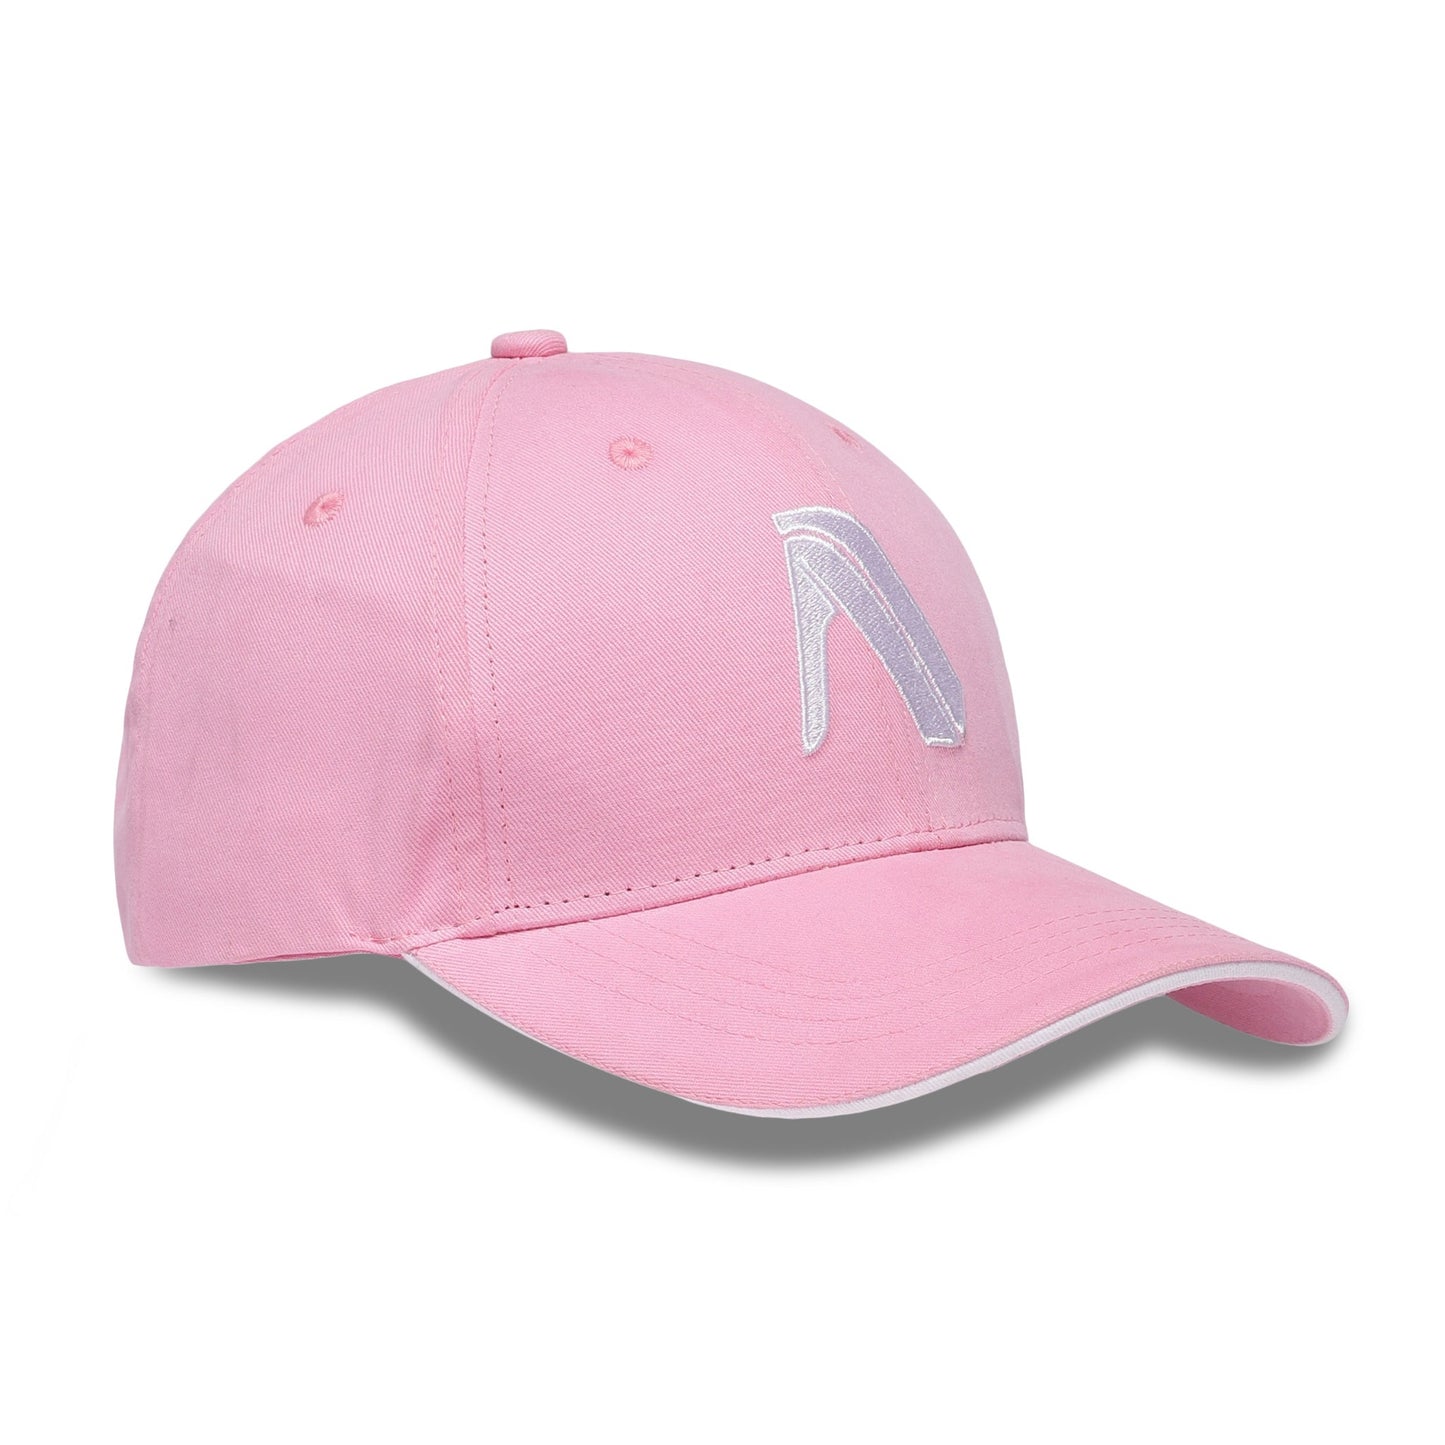 Buy Premium Cotton Caps for Men Online - Pink